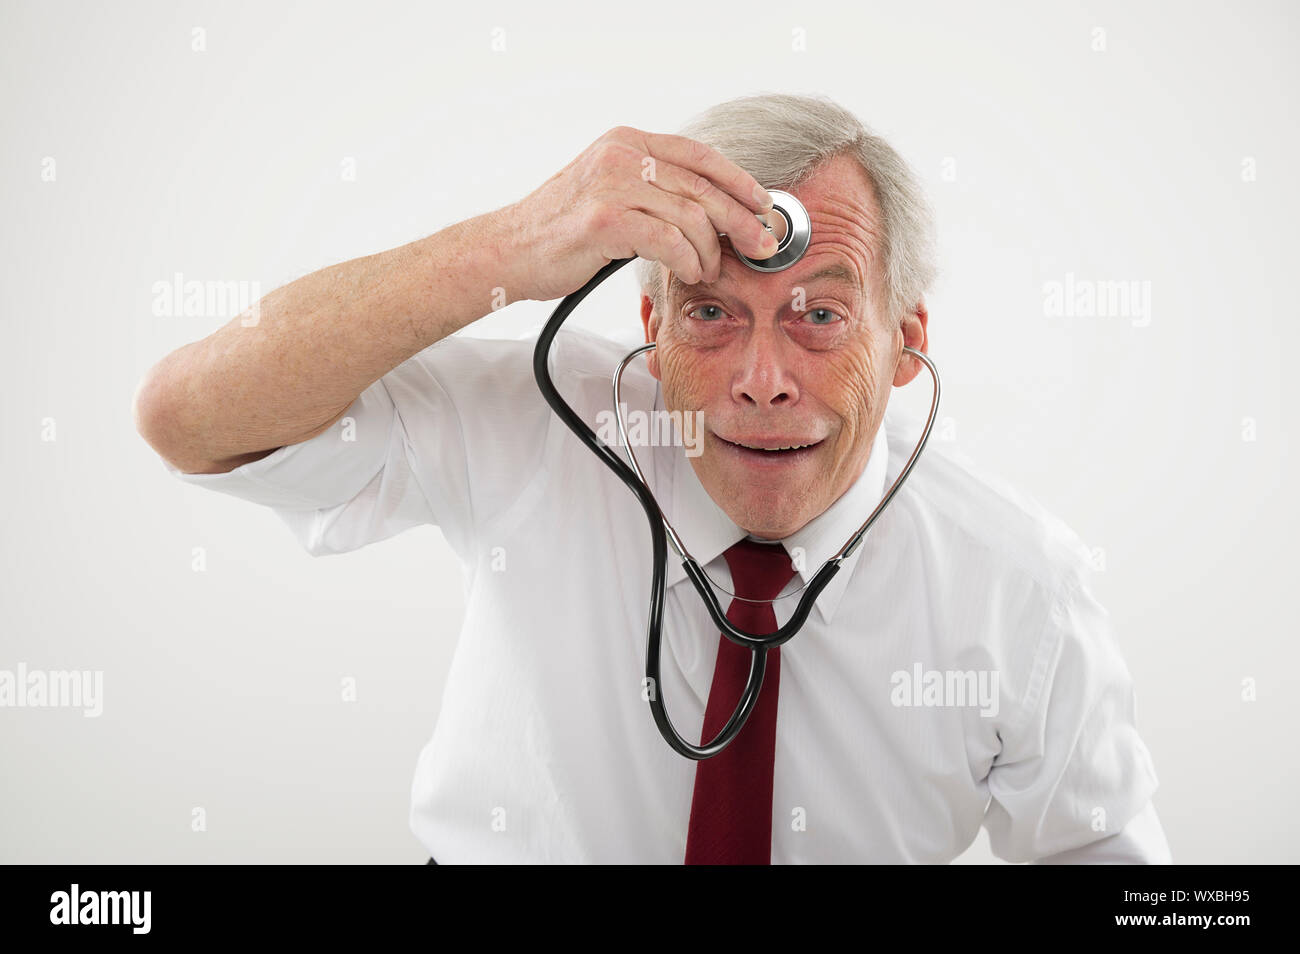 Humorvoll medizinisches Konzept eines älteren Menschen ziehen ein komisches Gesicht eine stethosope auf die Stirn, als ob sein Gehirn Funktion prüfen, Intellekt, Stockfoto